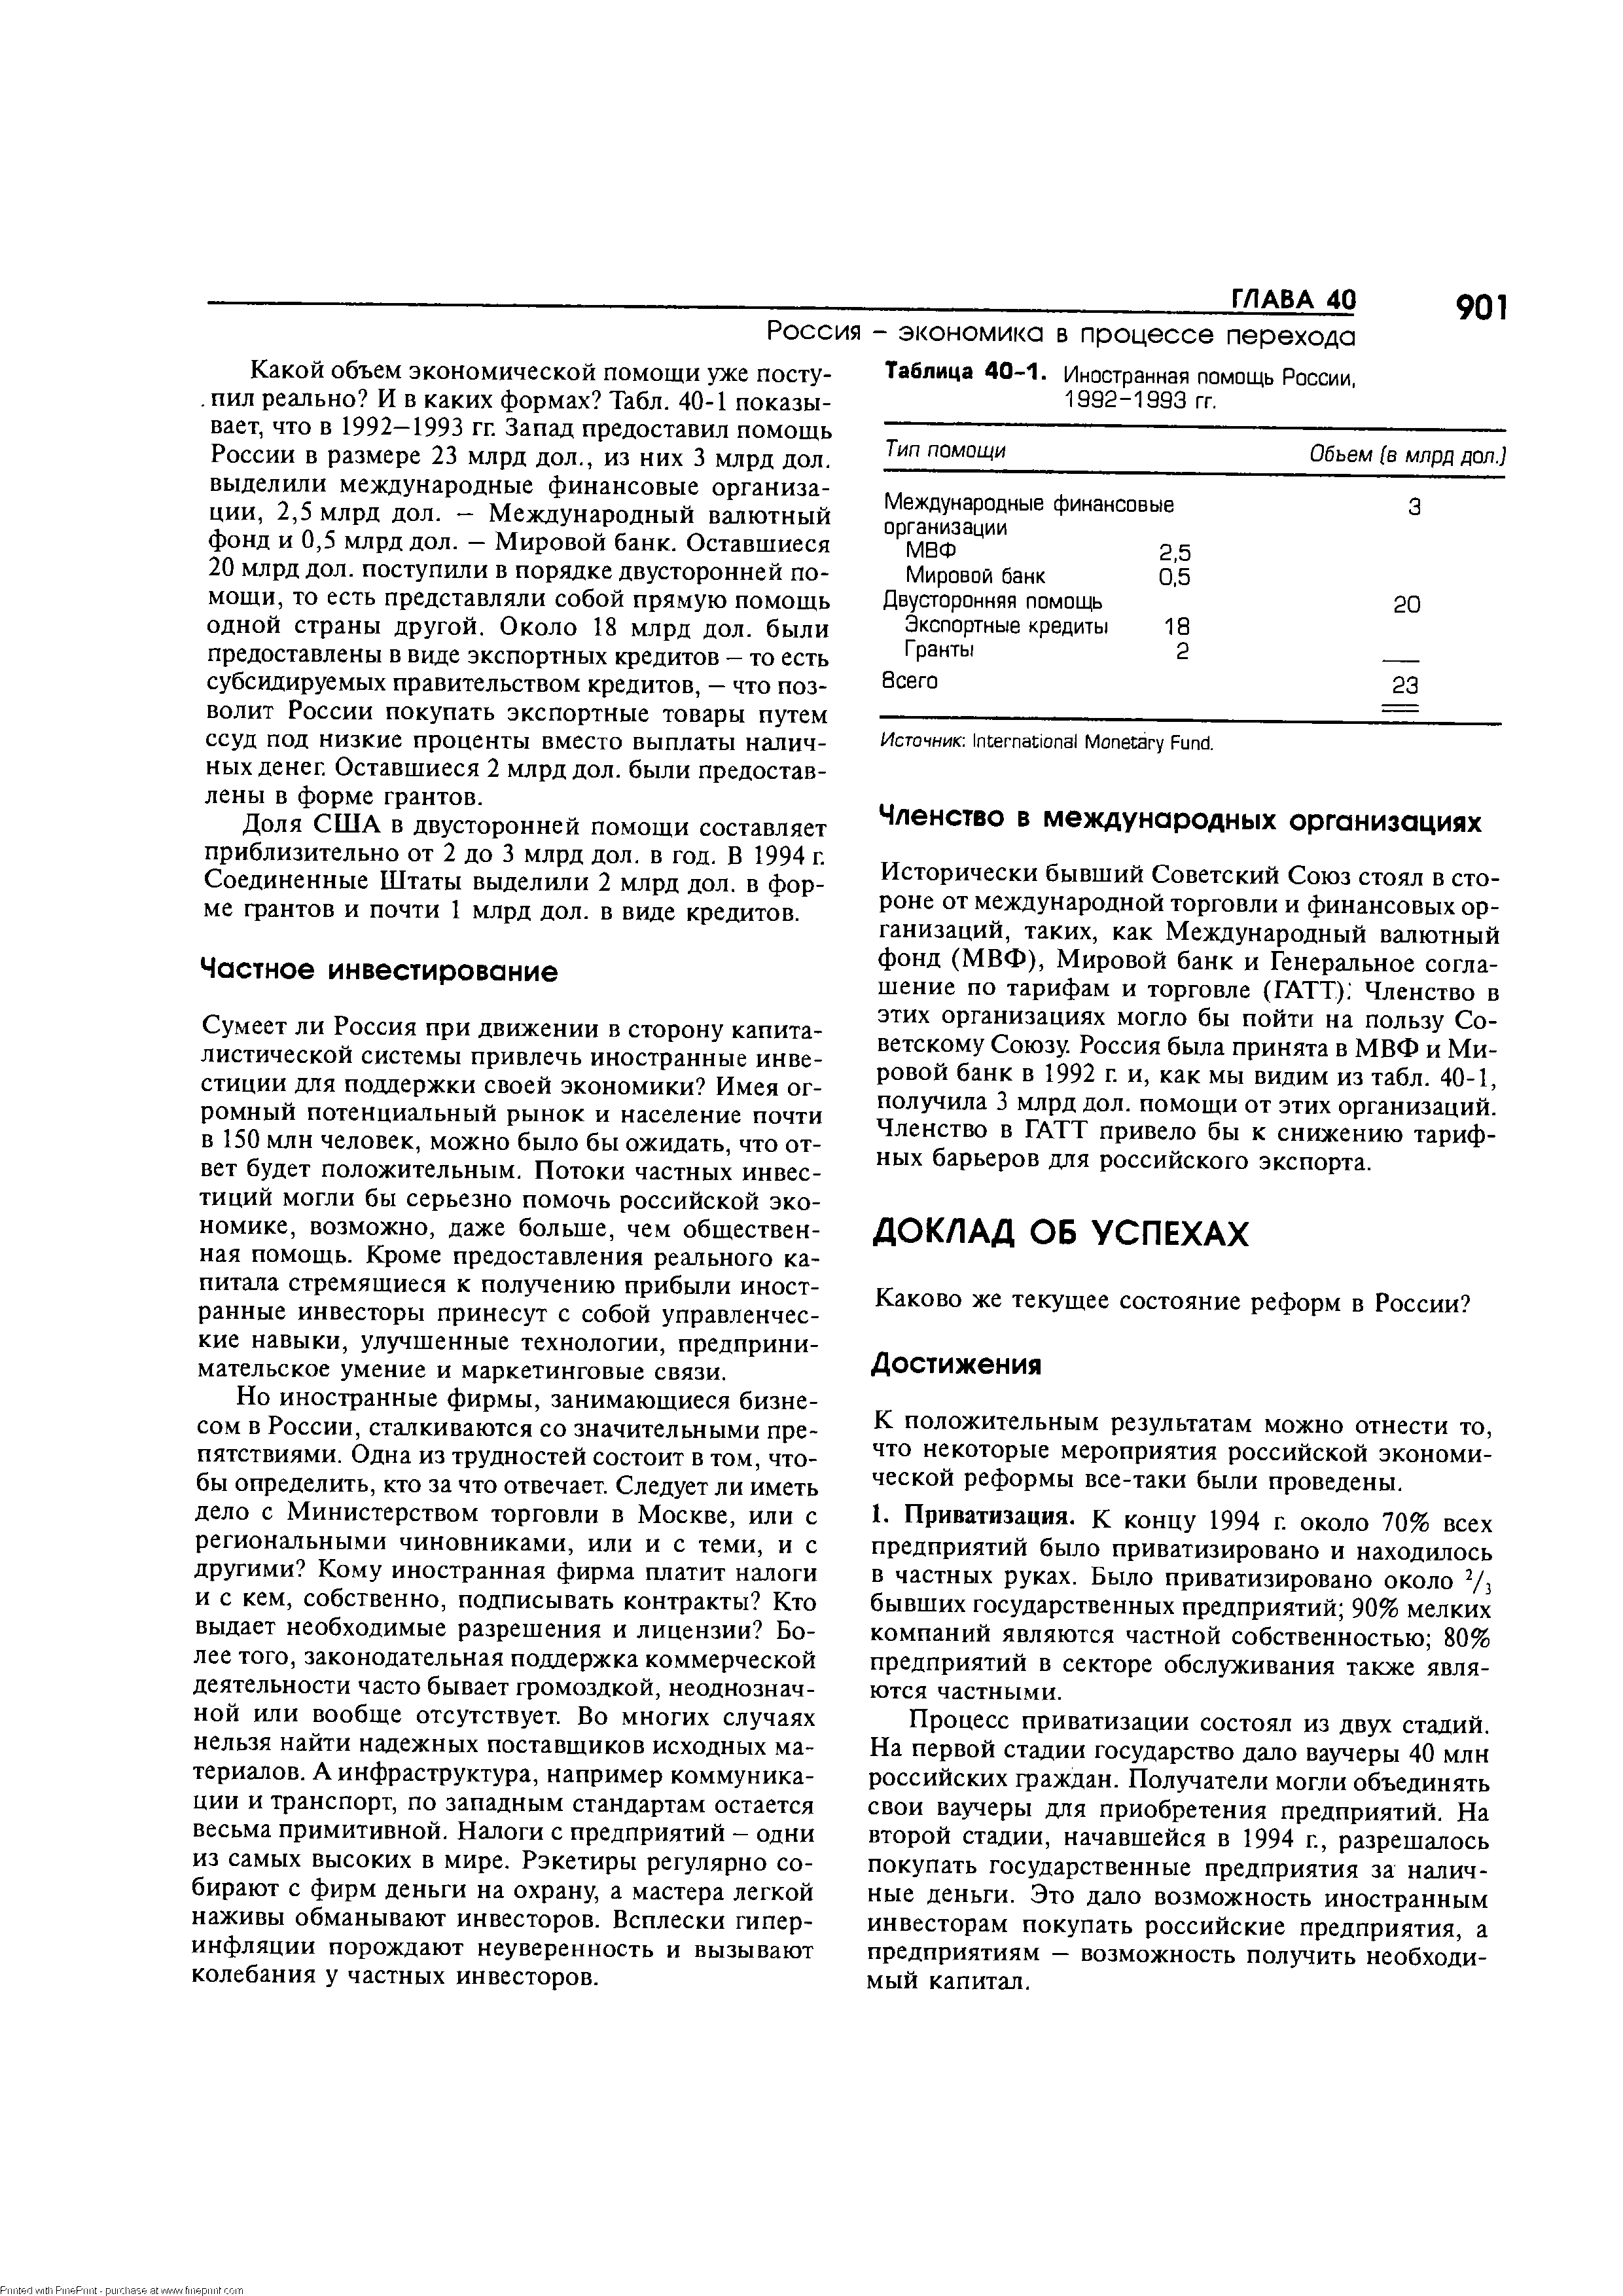 Таблица 40-1. Иностранная помощь России, 1992-1993 гг.
